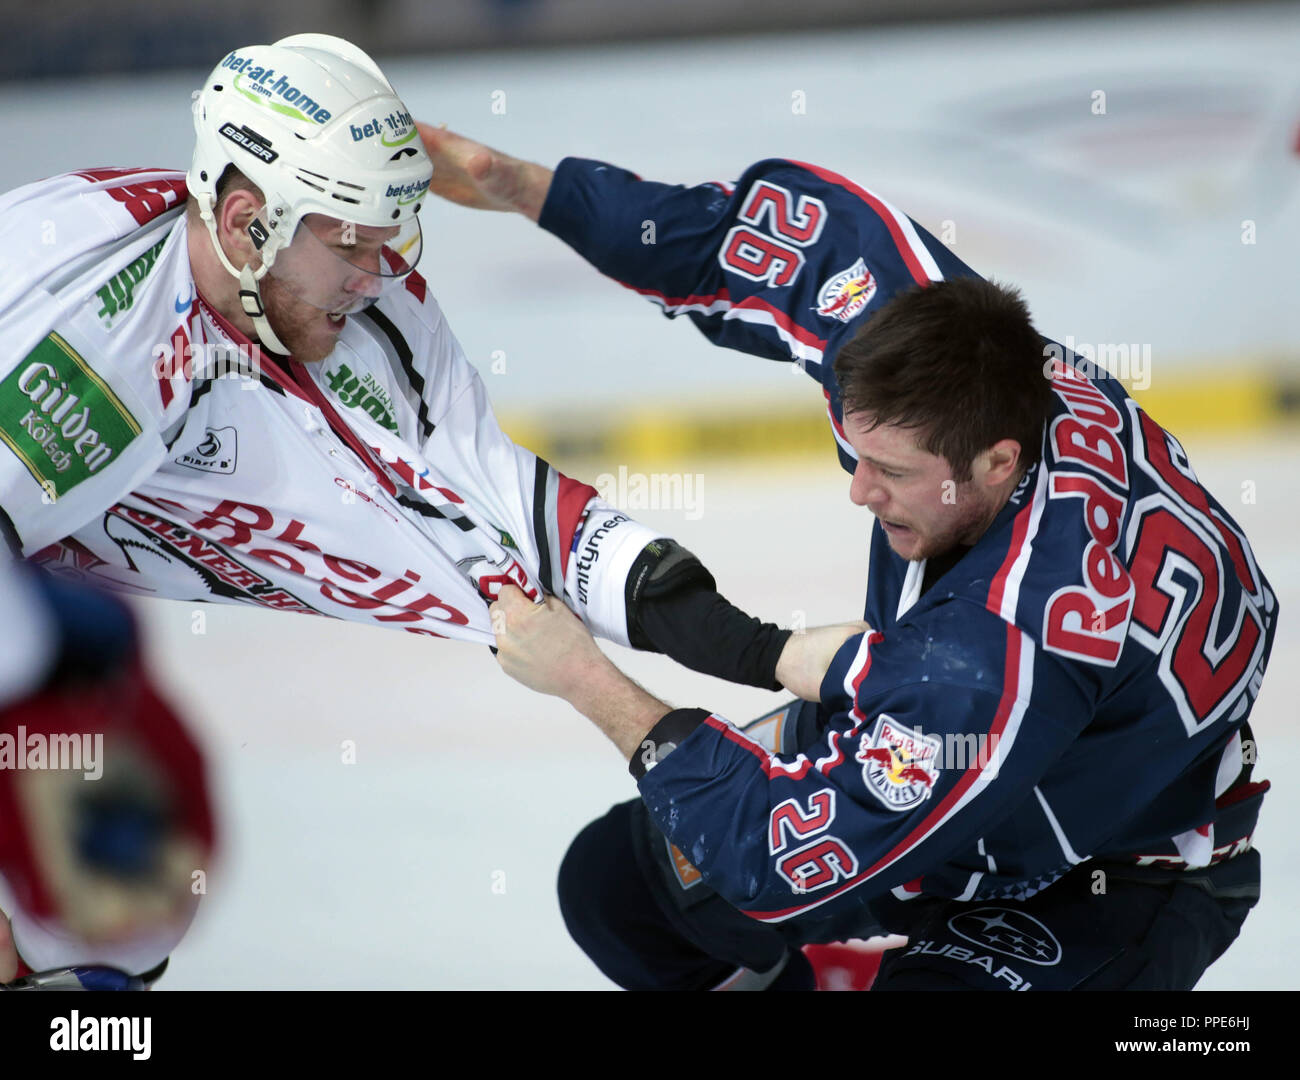 Hockey su ghiaccio: EHC Red Bull Muenchen - Koelner Haie, una lotta tra Jan Urbas da e unità di comando elettroidraulica e Marcel Mueller da Koelner Haie. Foto Stock